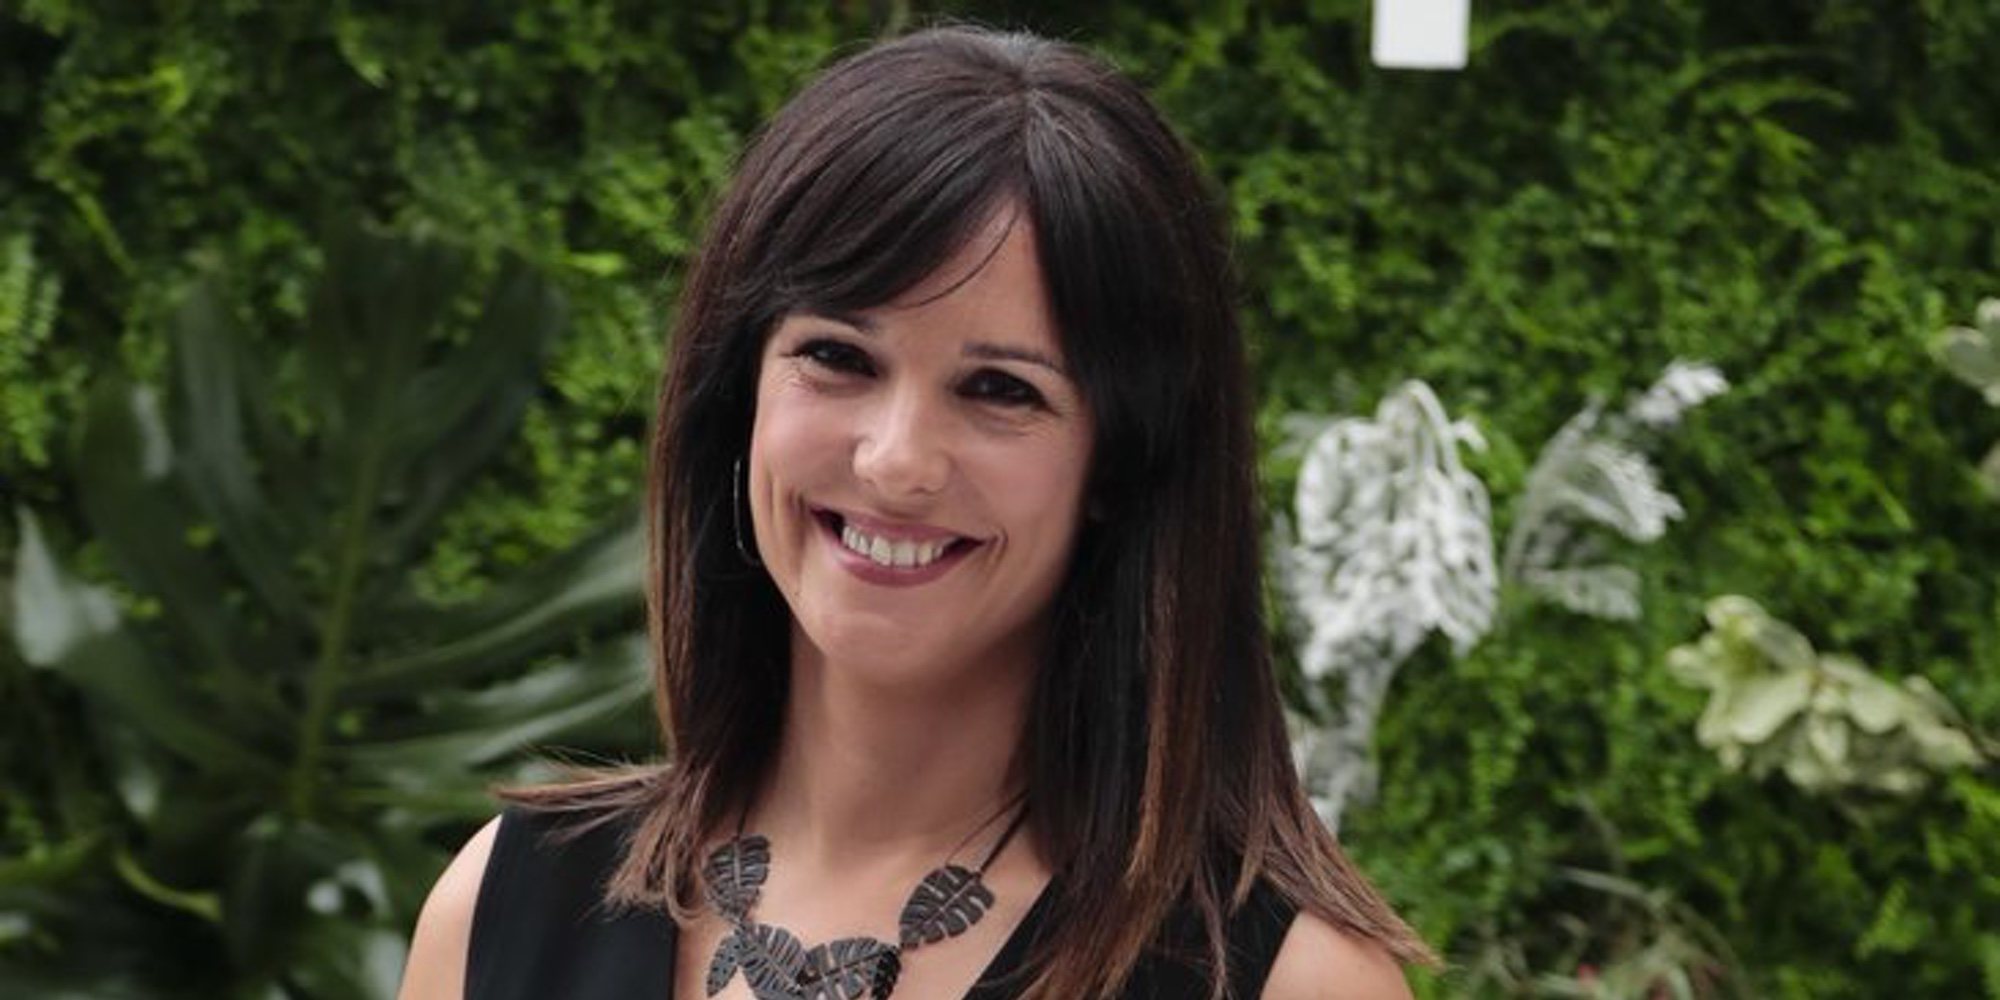 La presentadora Mónica López estalla tras recibir un ataque machista: "Estoy harta"